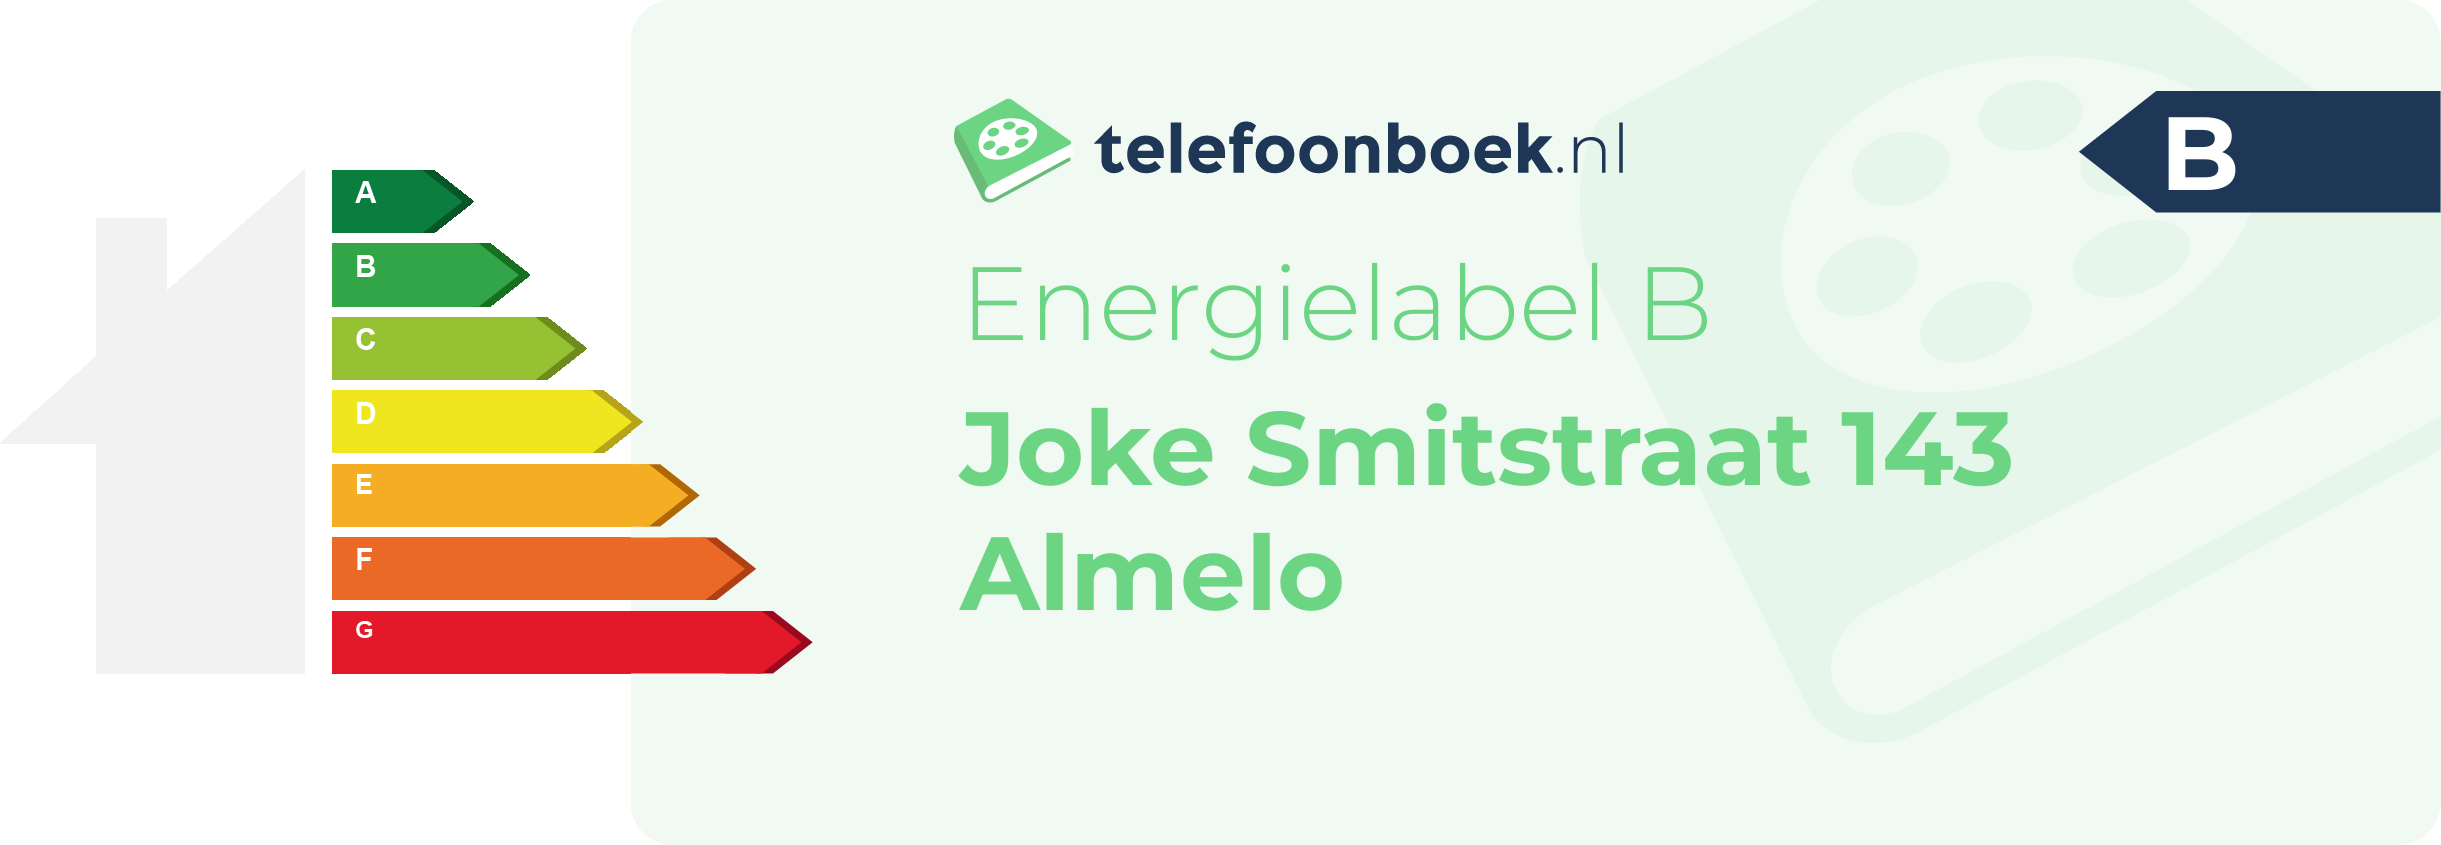 Energielabel Joke Smitstraat 143 Almelo